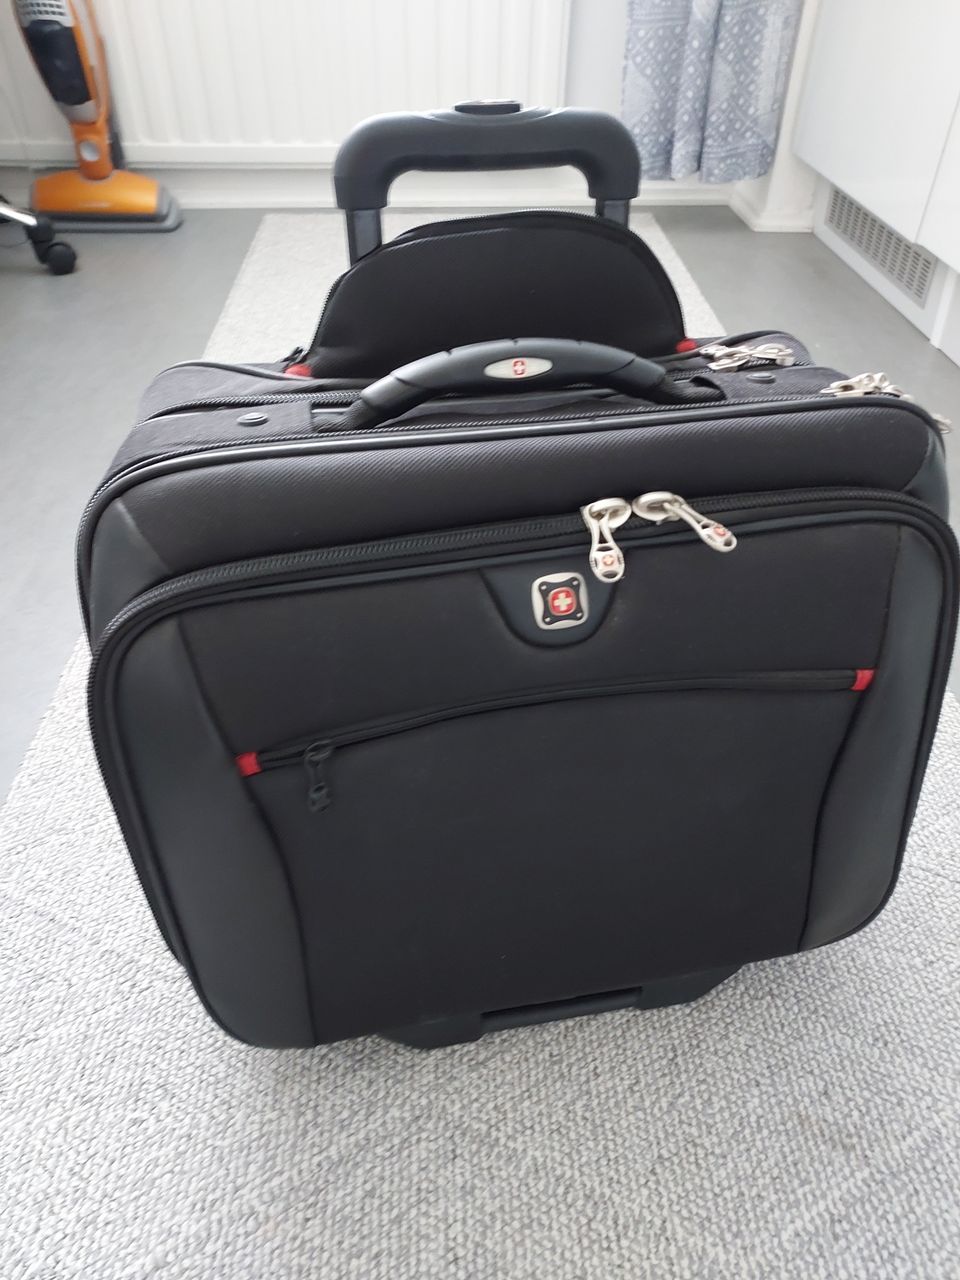 Käyttämätön matkalaukku vetokahvalla, jonka päälle voi laittaa toisen laukun.